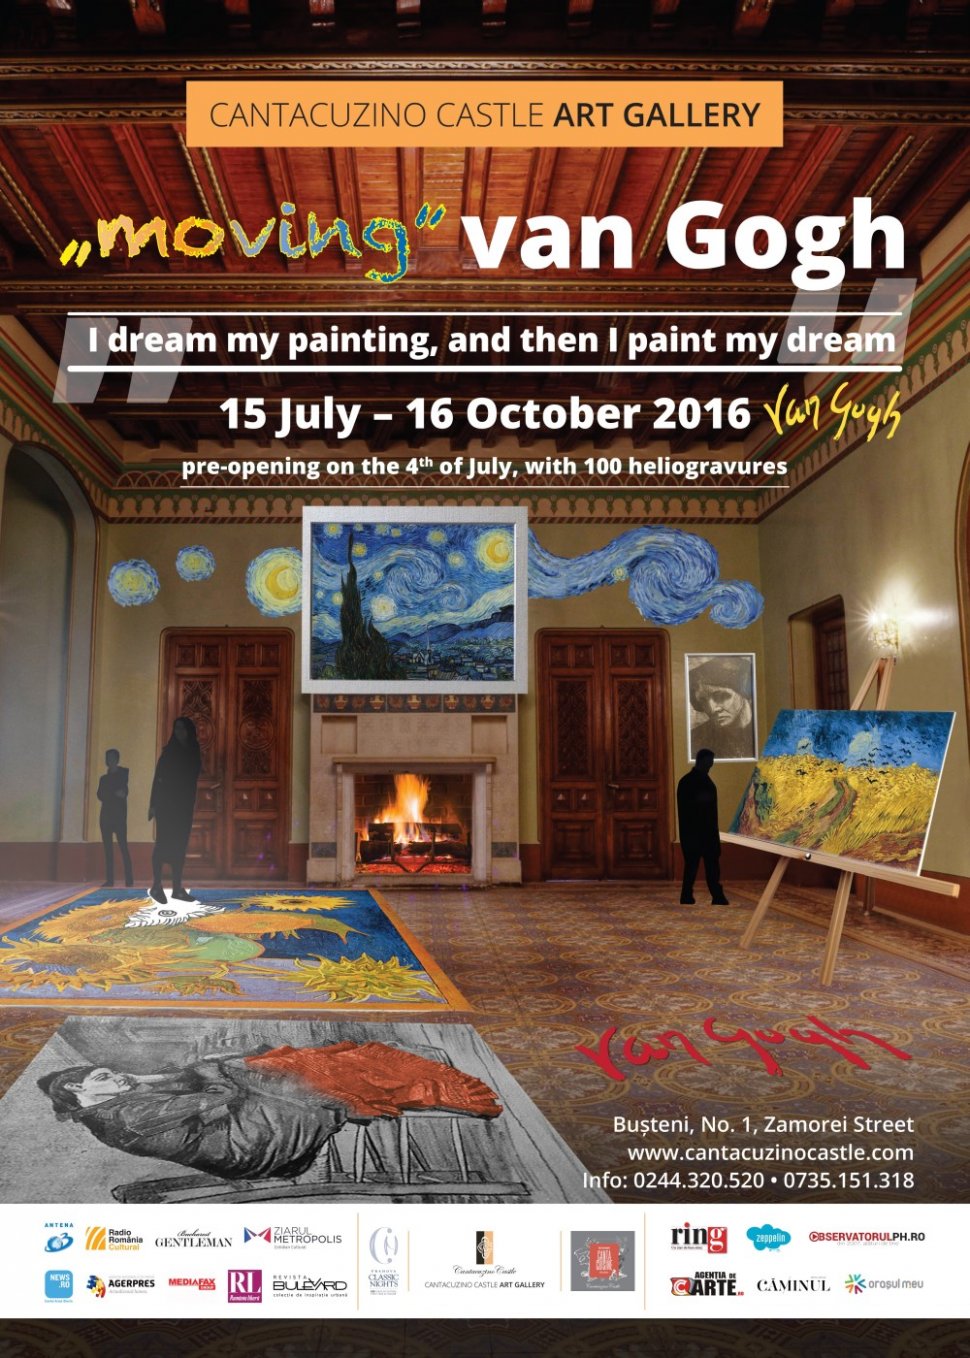 Antena 3 recomandă: Holograma pictorului Vincent van Gogh, instalații audio-video și floarea-soarelui animată, într-o expoziție interactivă, la Castelul Cantacuzino